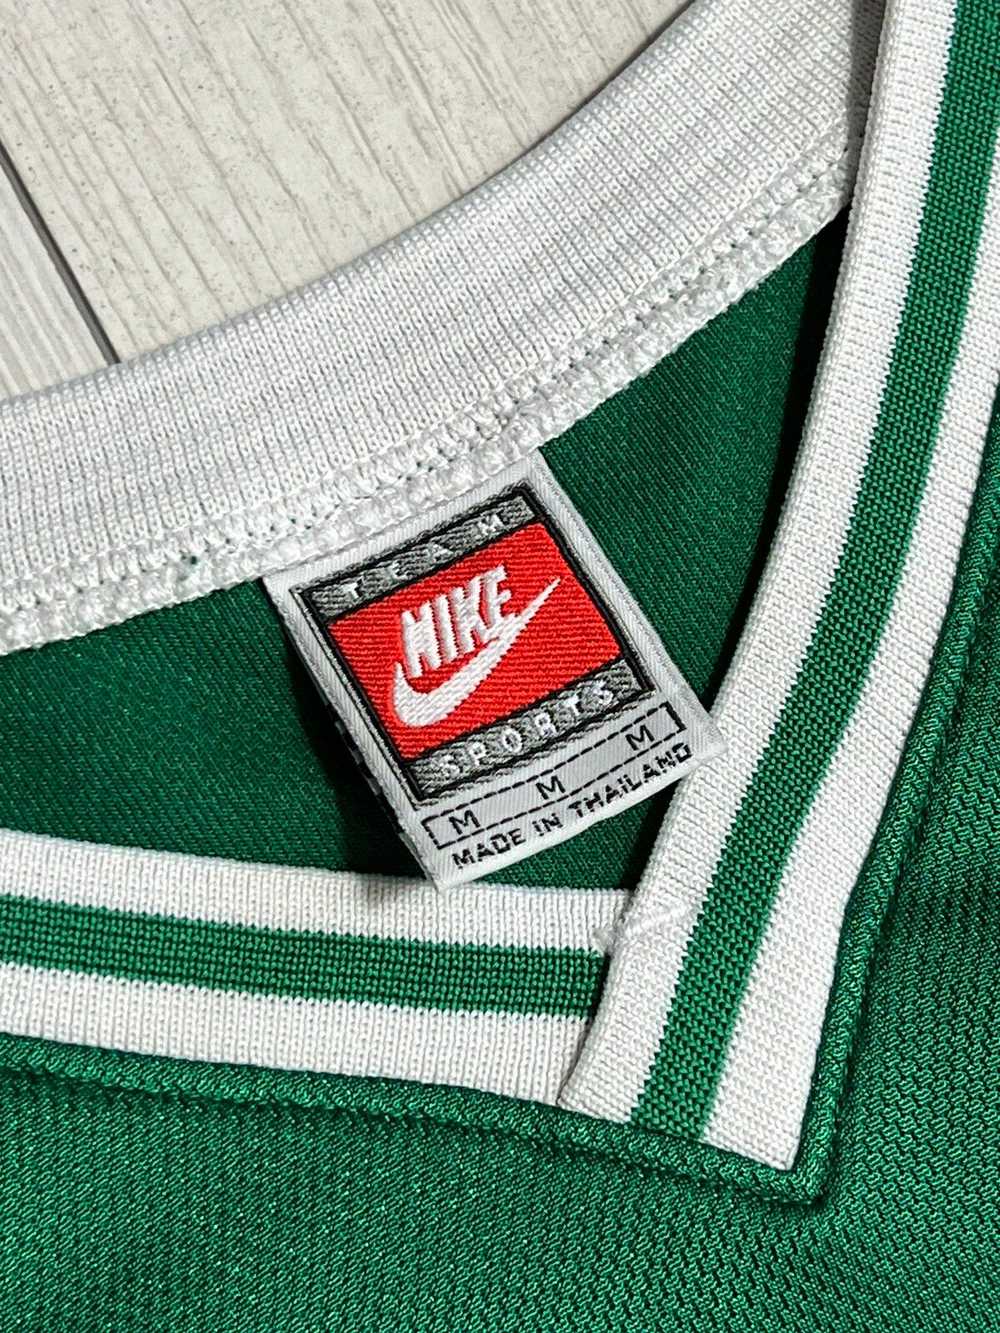 1990x Clothing × NBA × Nike Basketball shirt 90s … - image 5